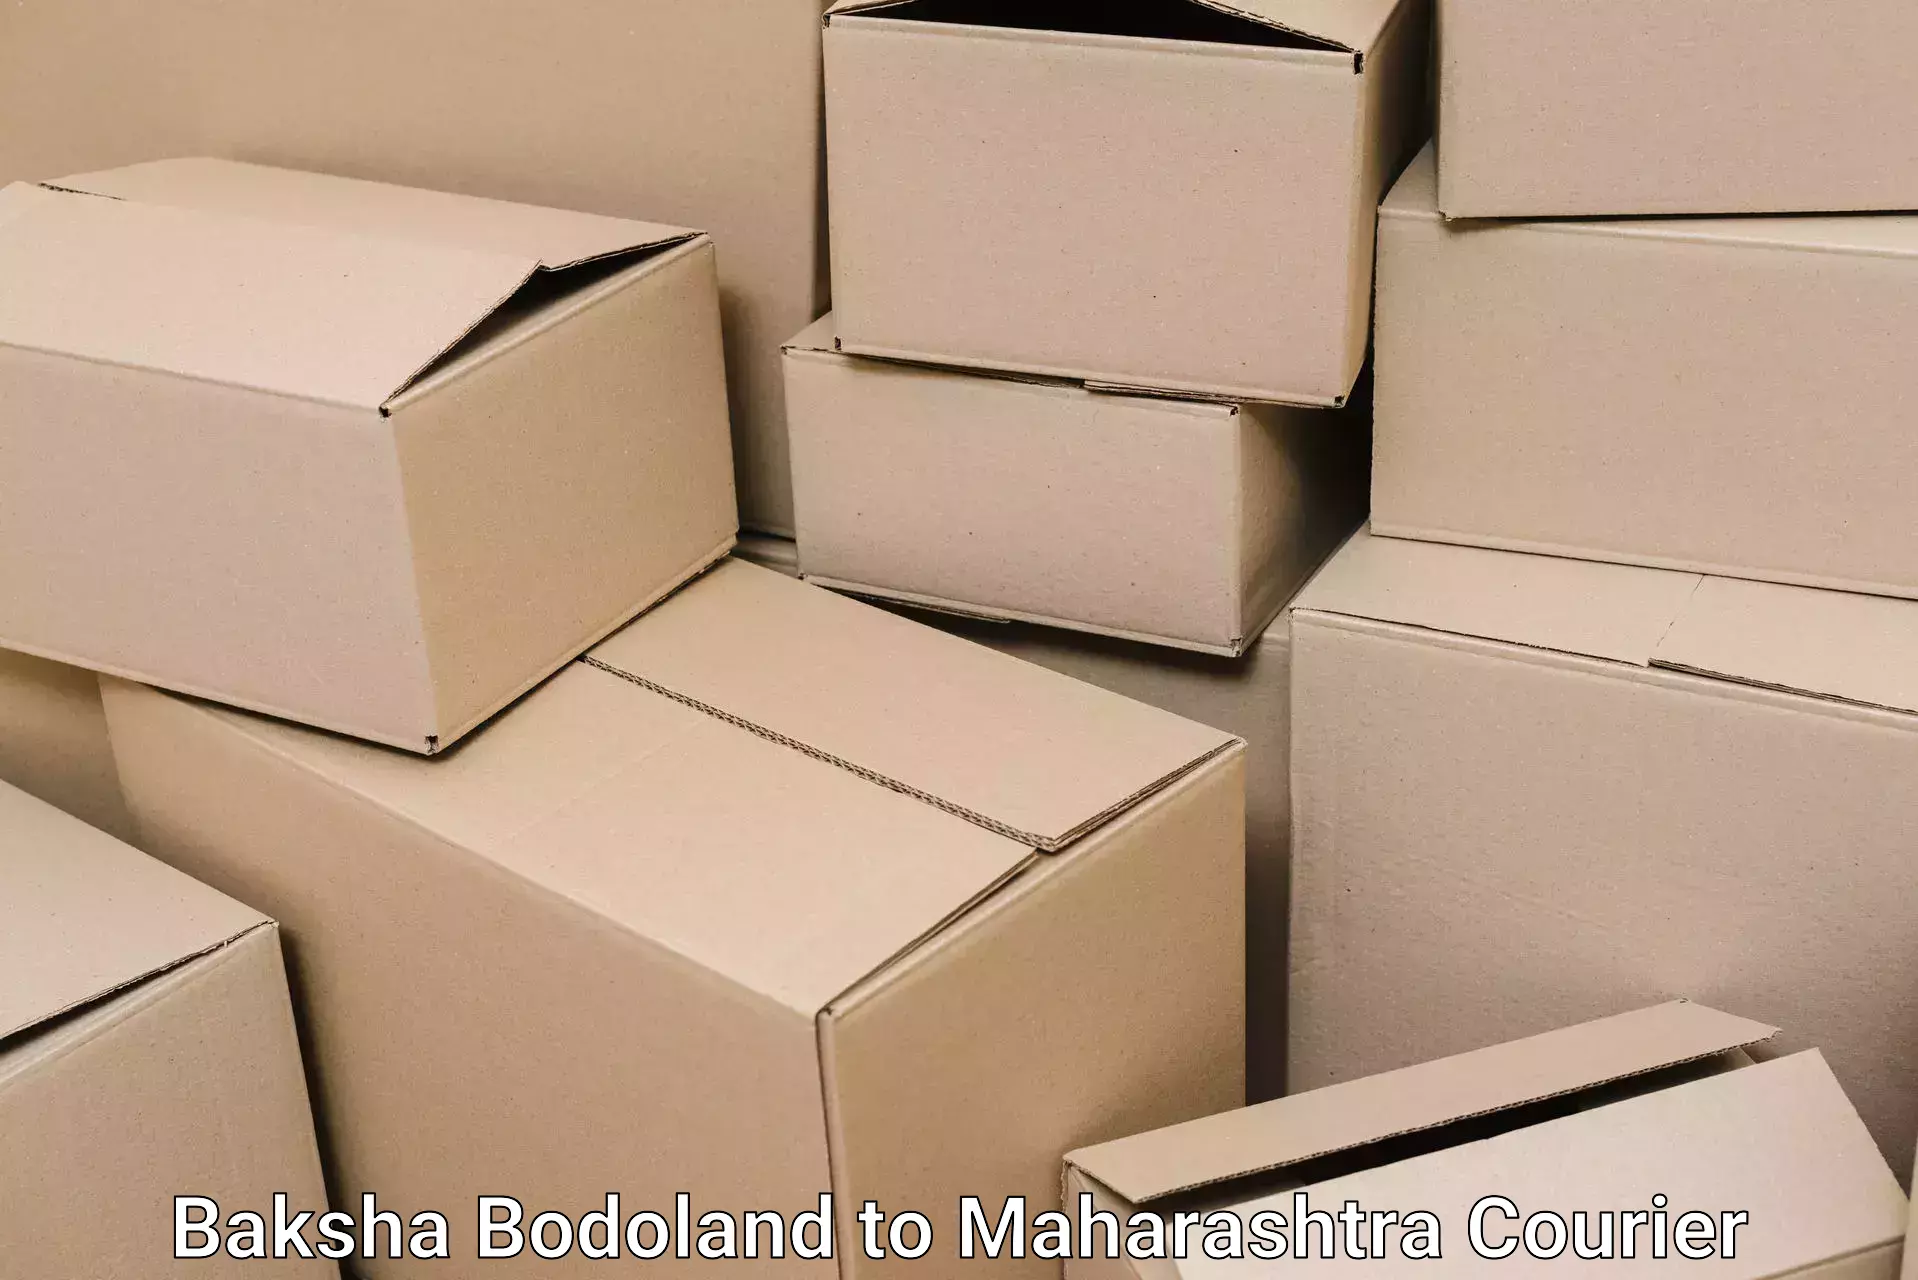 Full-service household moving in Baksha Bodoland to Oras